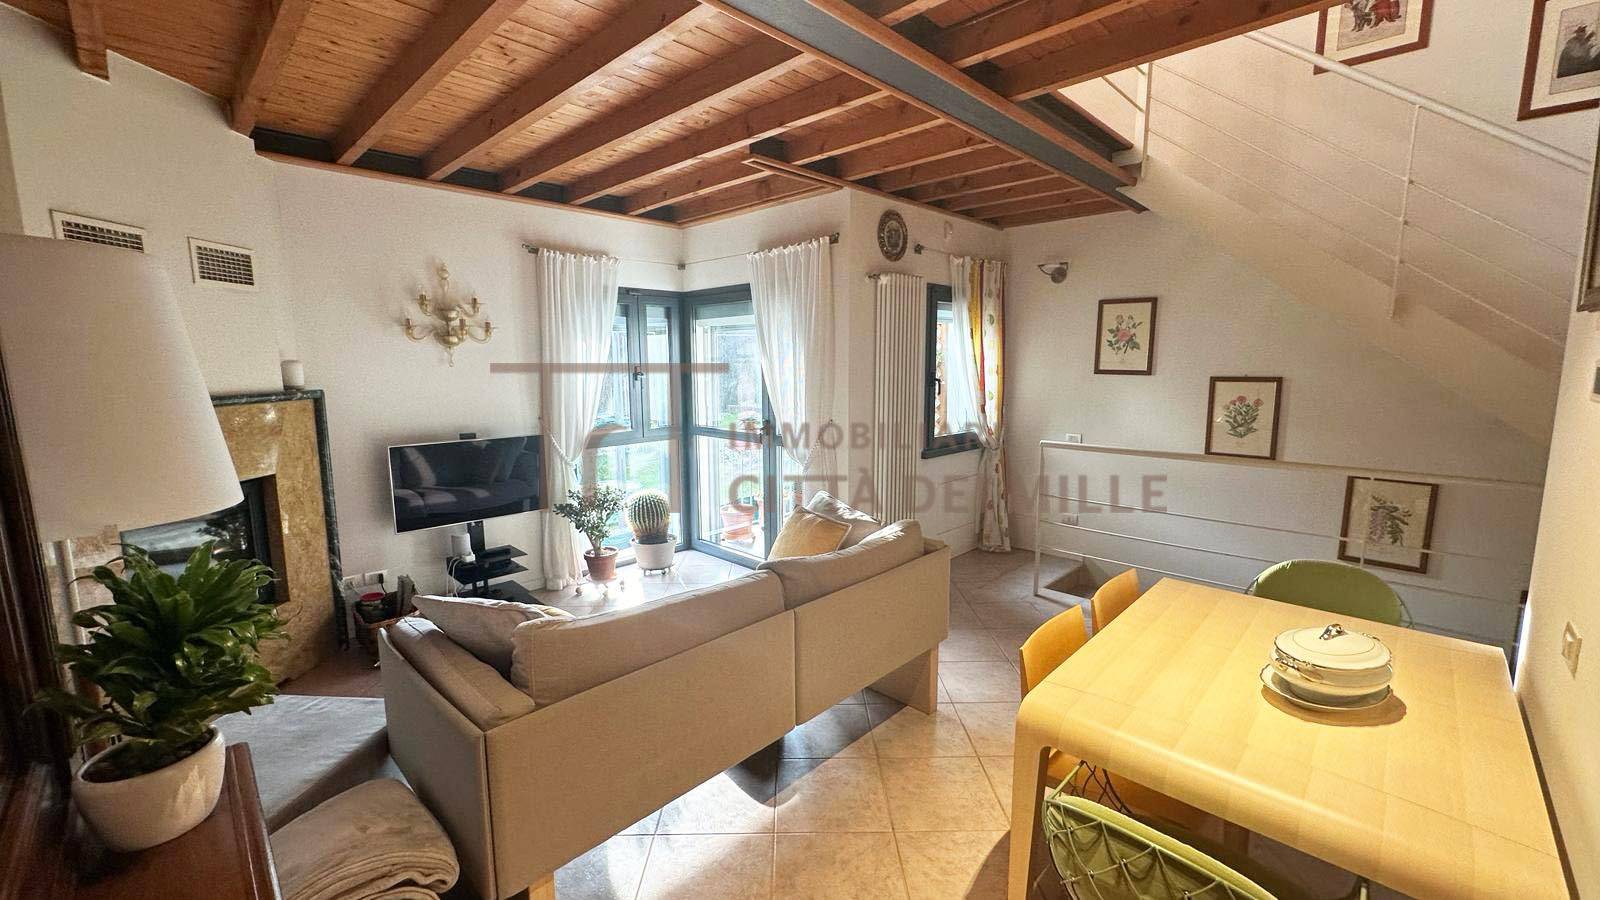 Appartamento in vendita a Ranica, 3 locali, zona Località: BorgoSale, prezzo € 275.000 | PortaleAgenzieImmobiliari.it